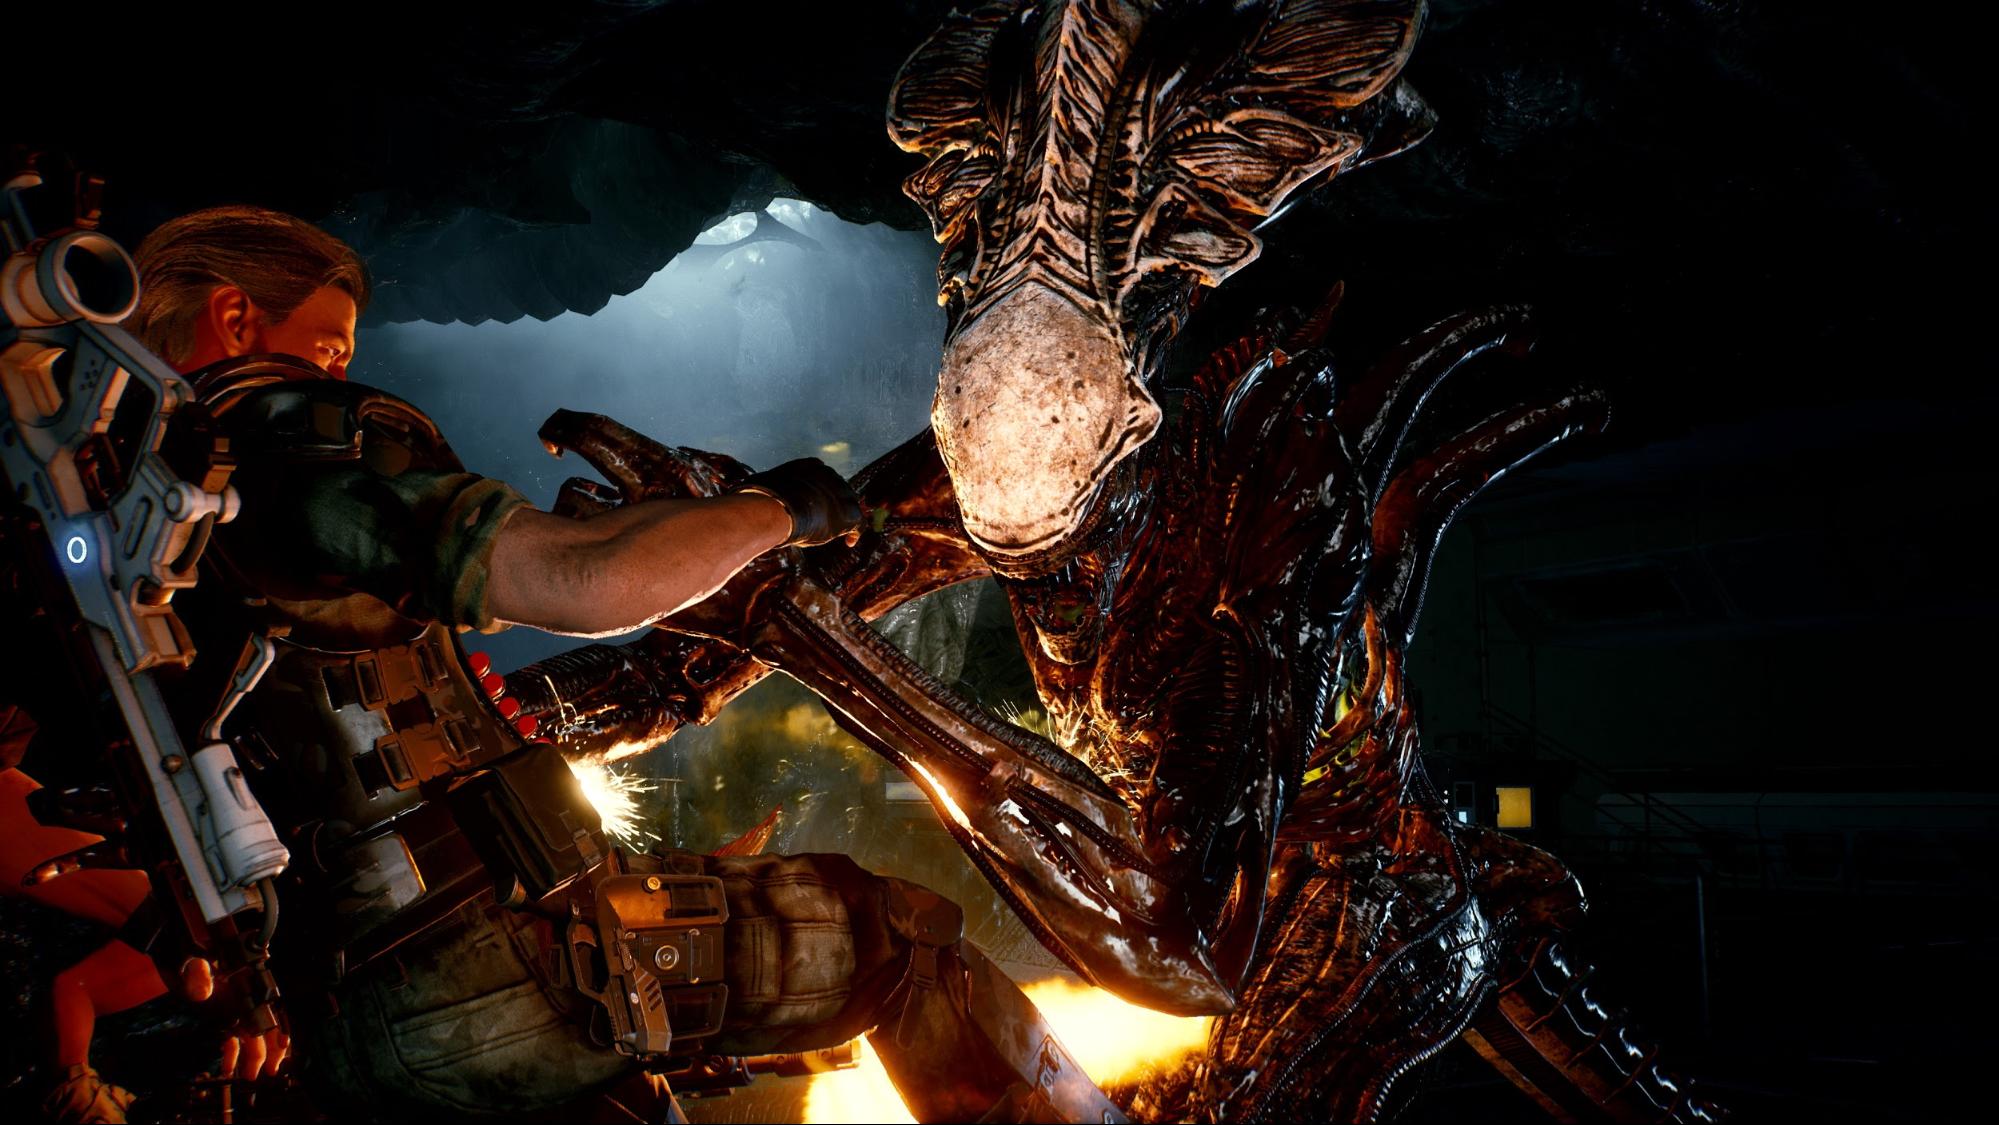 映画『エイリアン』を題材にした協力アクションゲーム『Aliens: Fireteam』が正式発表。3人で協力して20種類以上の無数の敵と戦え_003